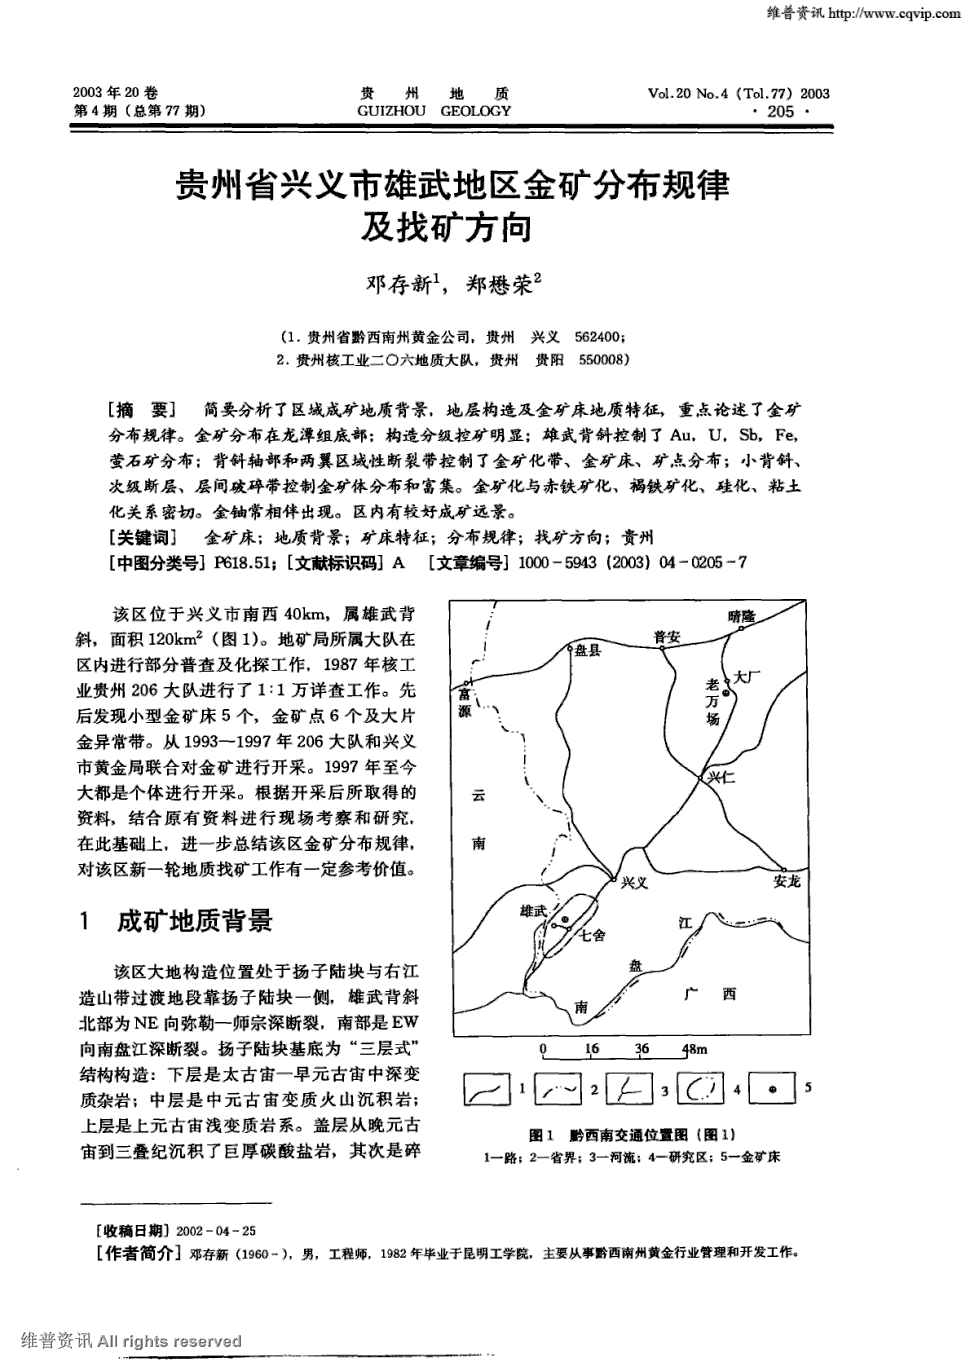 期刊贵州省兴义市雄武地区金矿分布规律及找矿方向被引量:15    简要